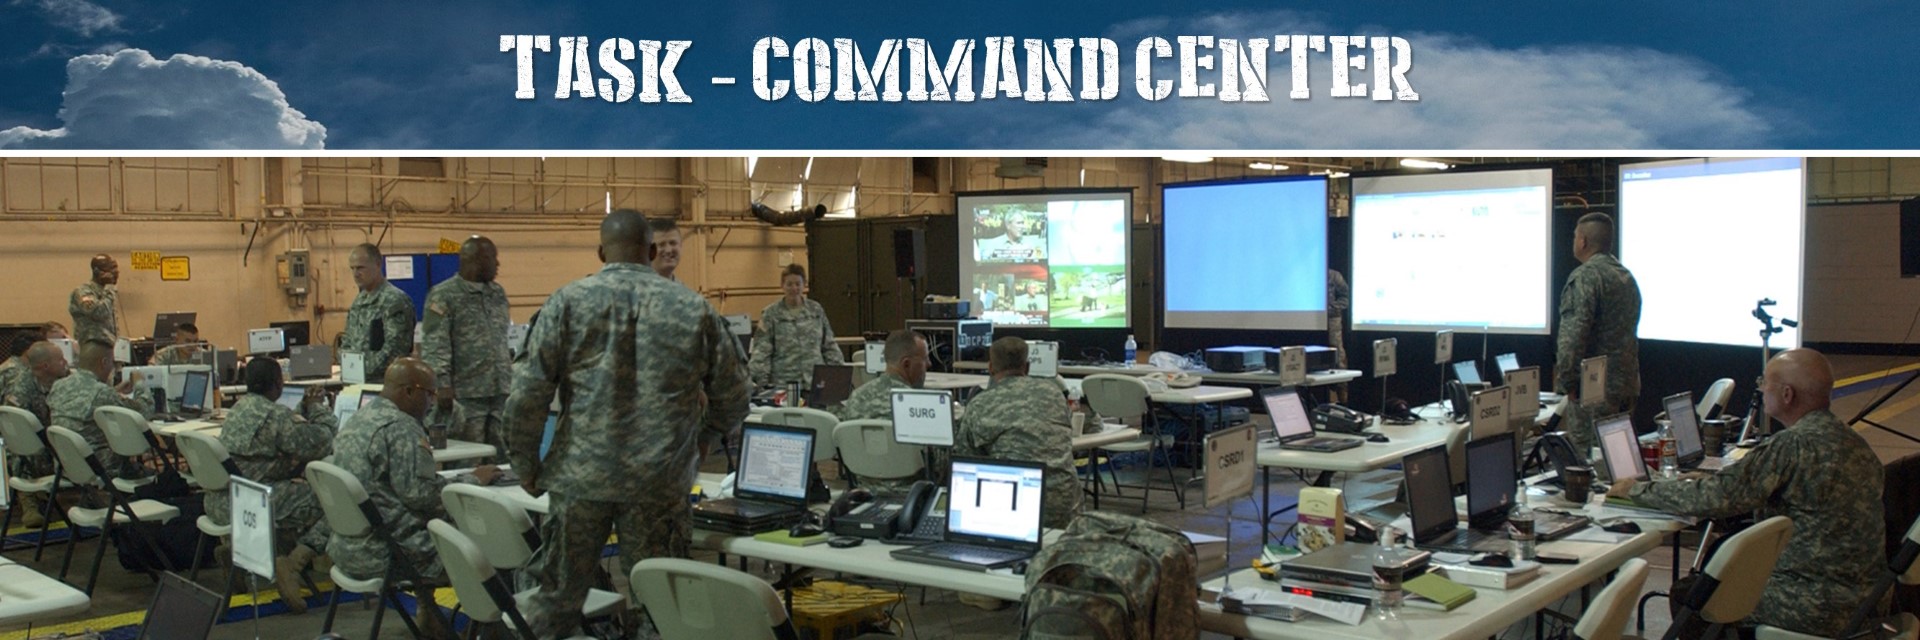 Tasking Command Center